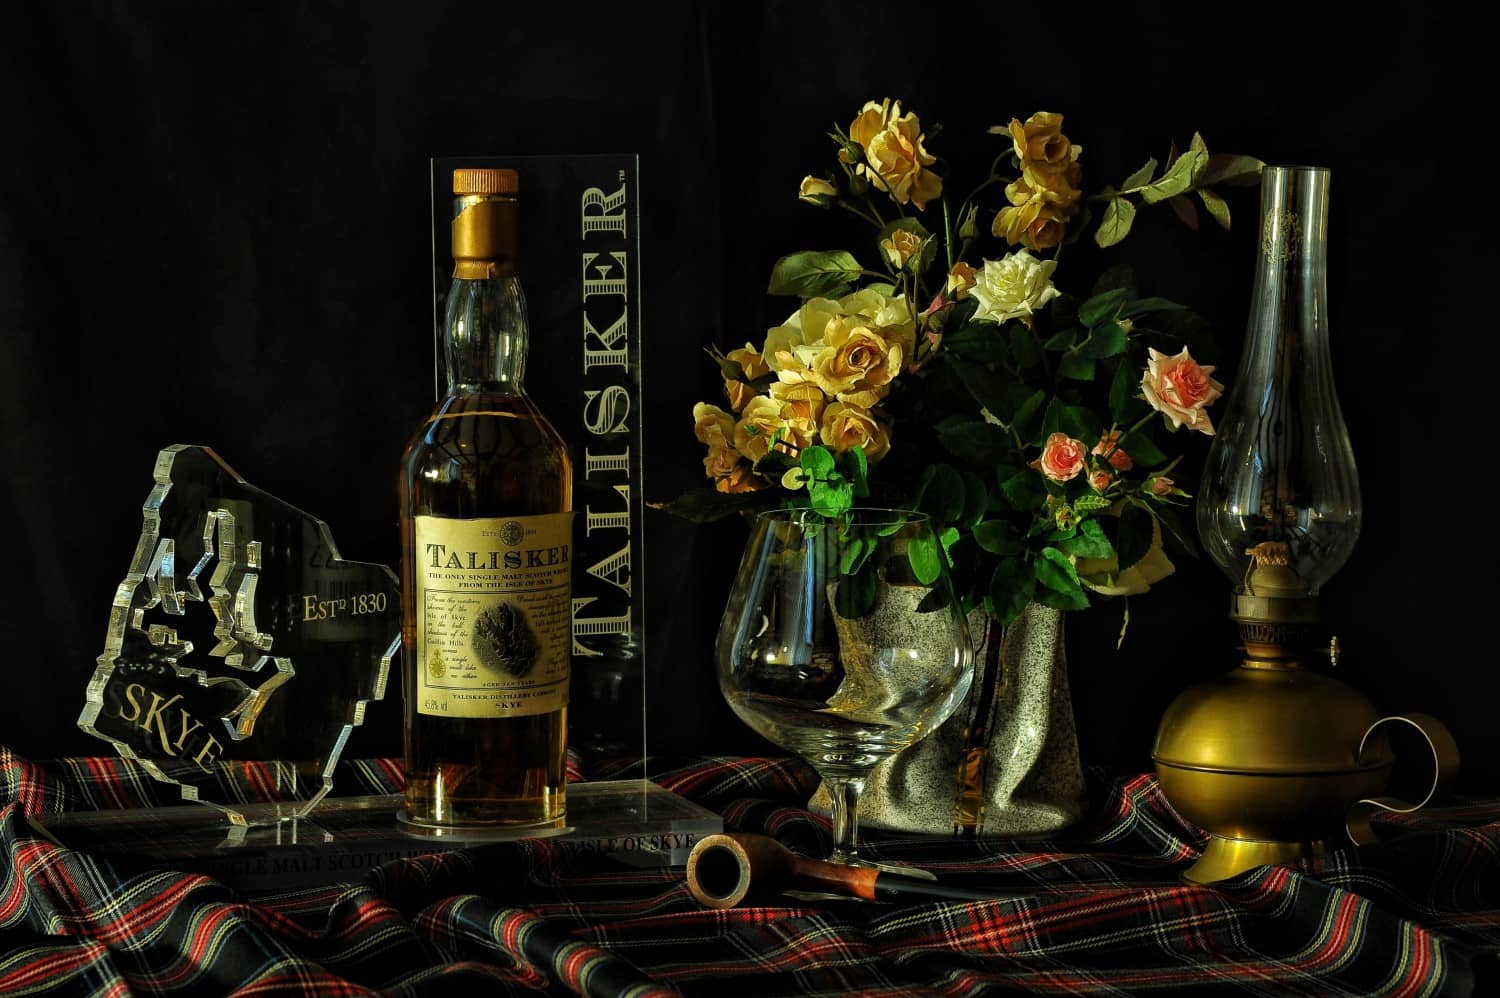 Garrafa de Talisker Single Malt, um dos diferentes tipos de scotch whisky